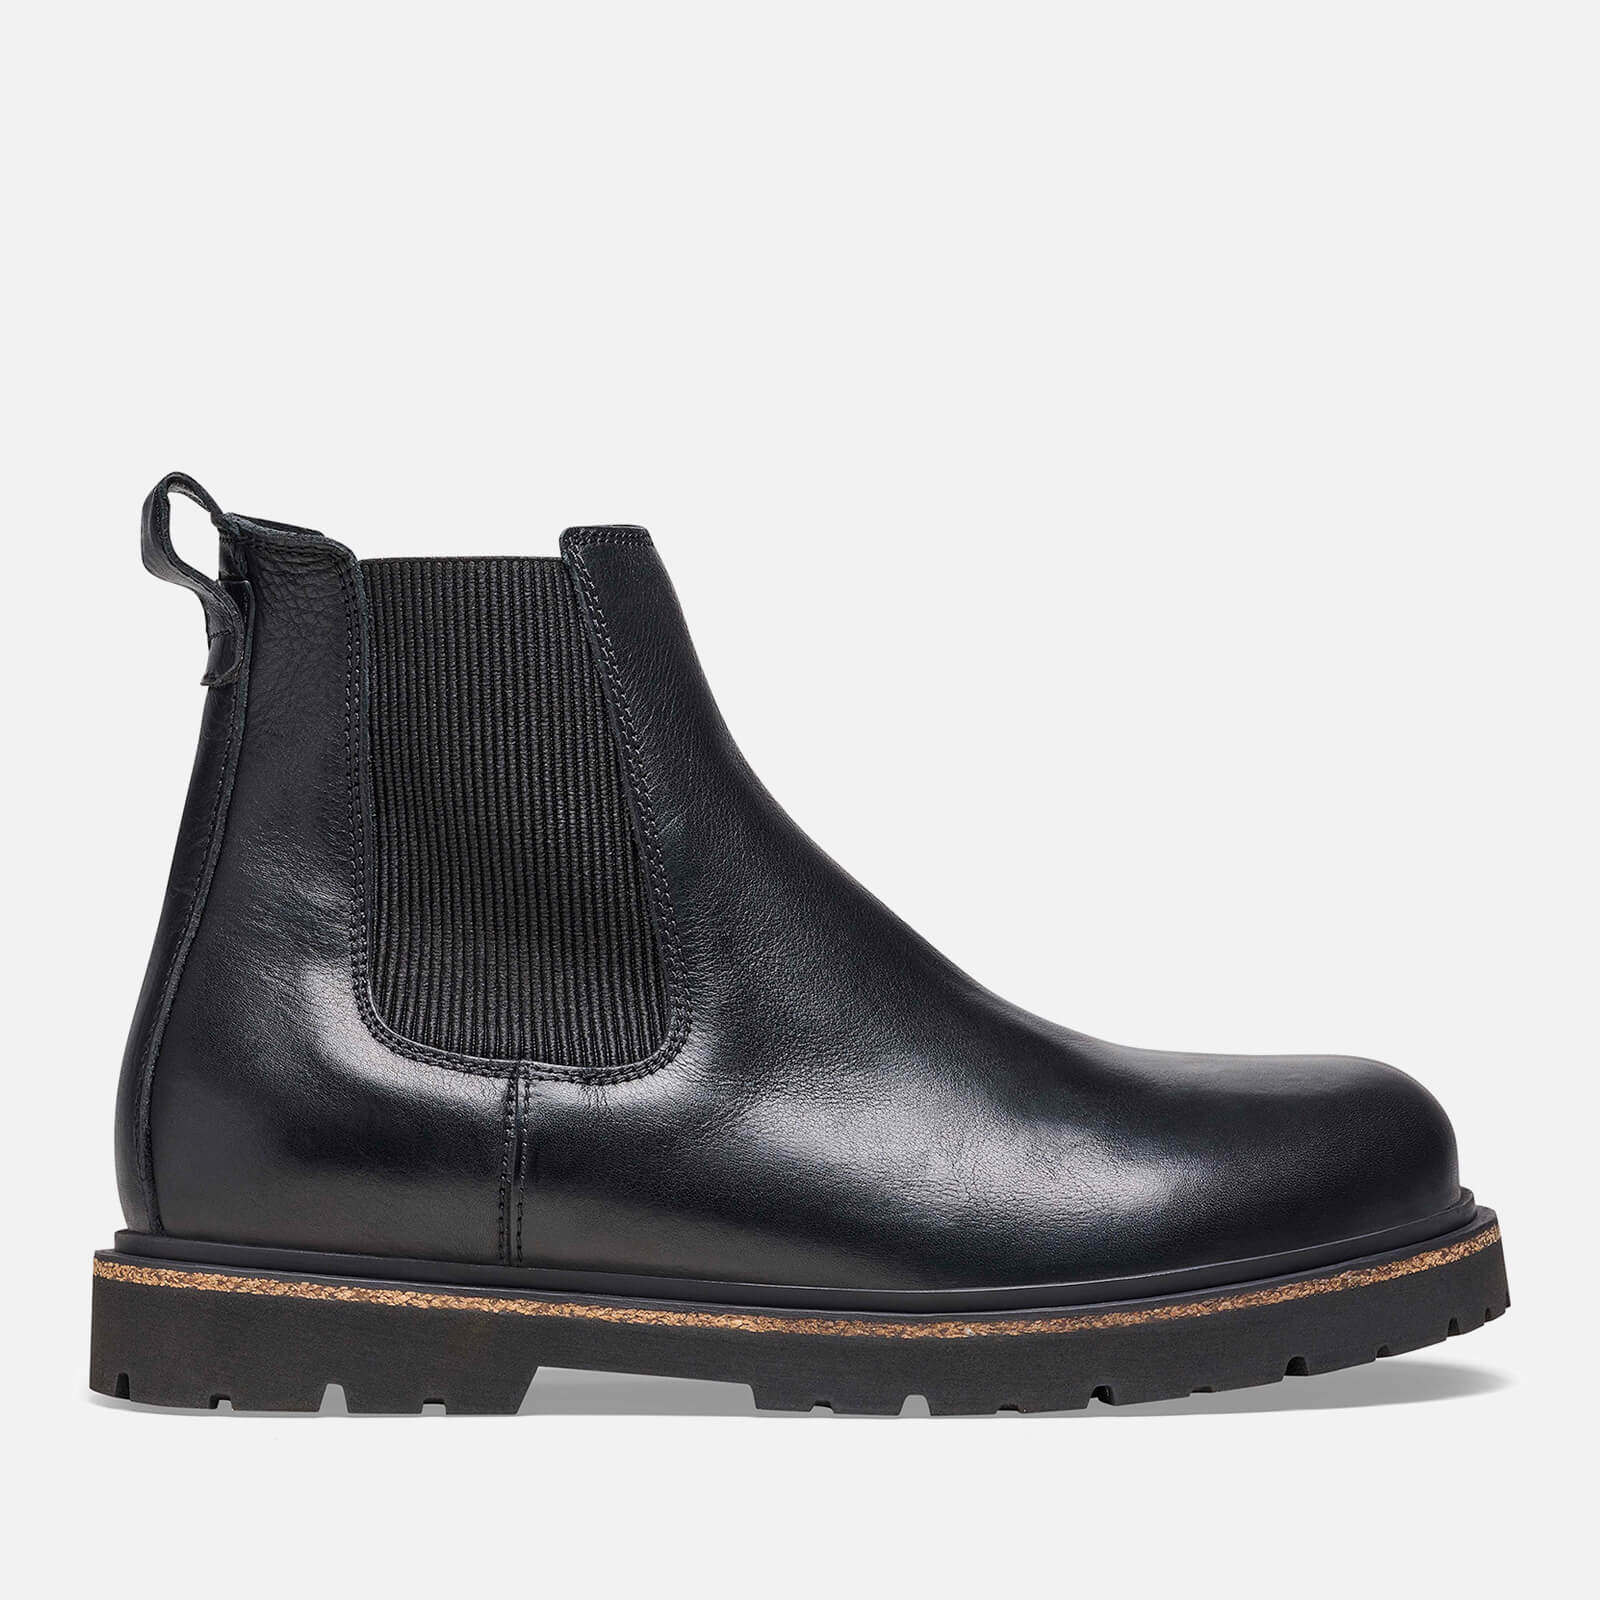 Birkenstock Men’s Gripwalk Leather Chelsea Boots